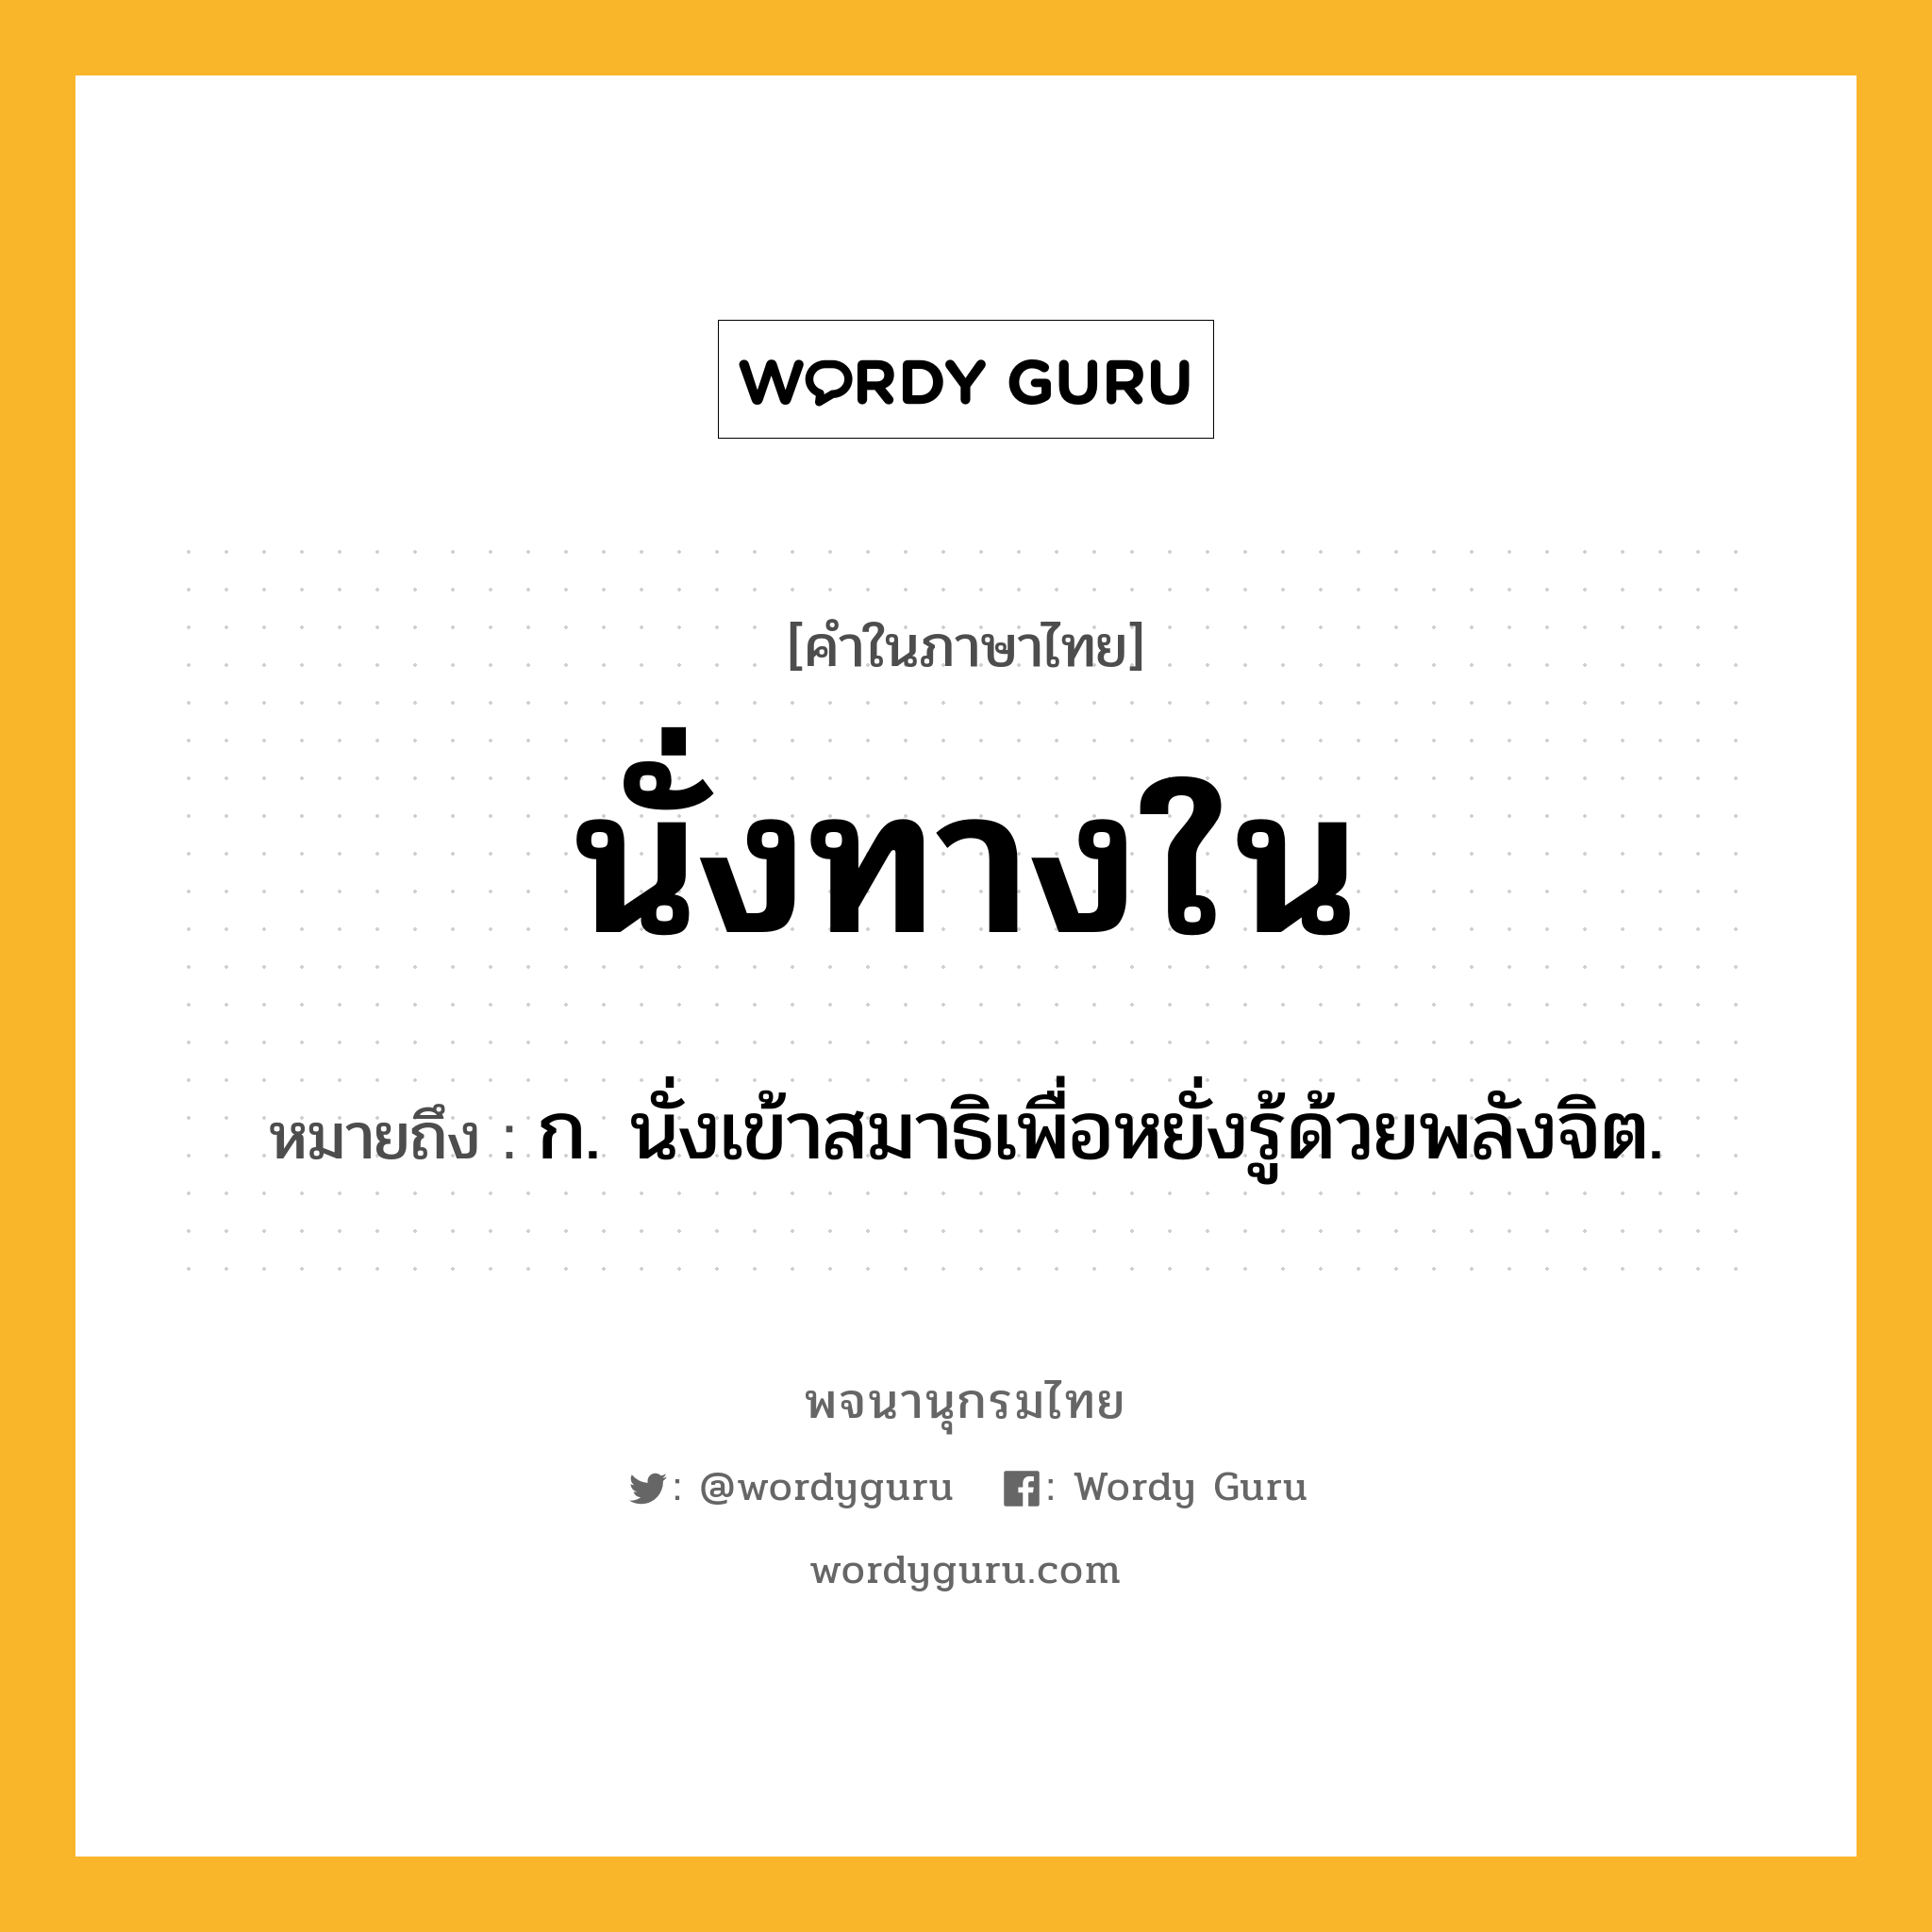 นั่งทางใน ความหมาย หมายถึงอะไร?, คำในภาษาไทย นั่งทางใน หมายถึง ก. นั่งเข้าสมาธิเพื่อหยั่งรู้ด้วยพลังจิต.